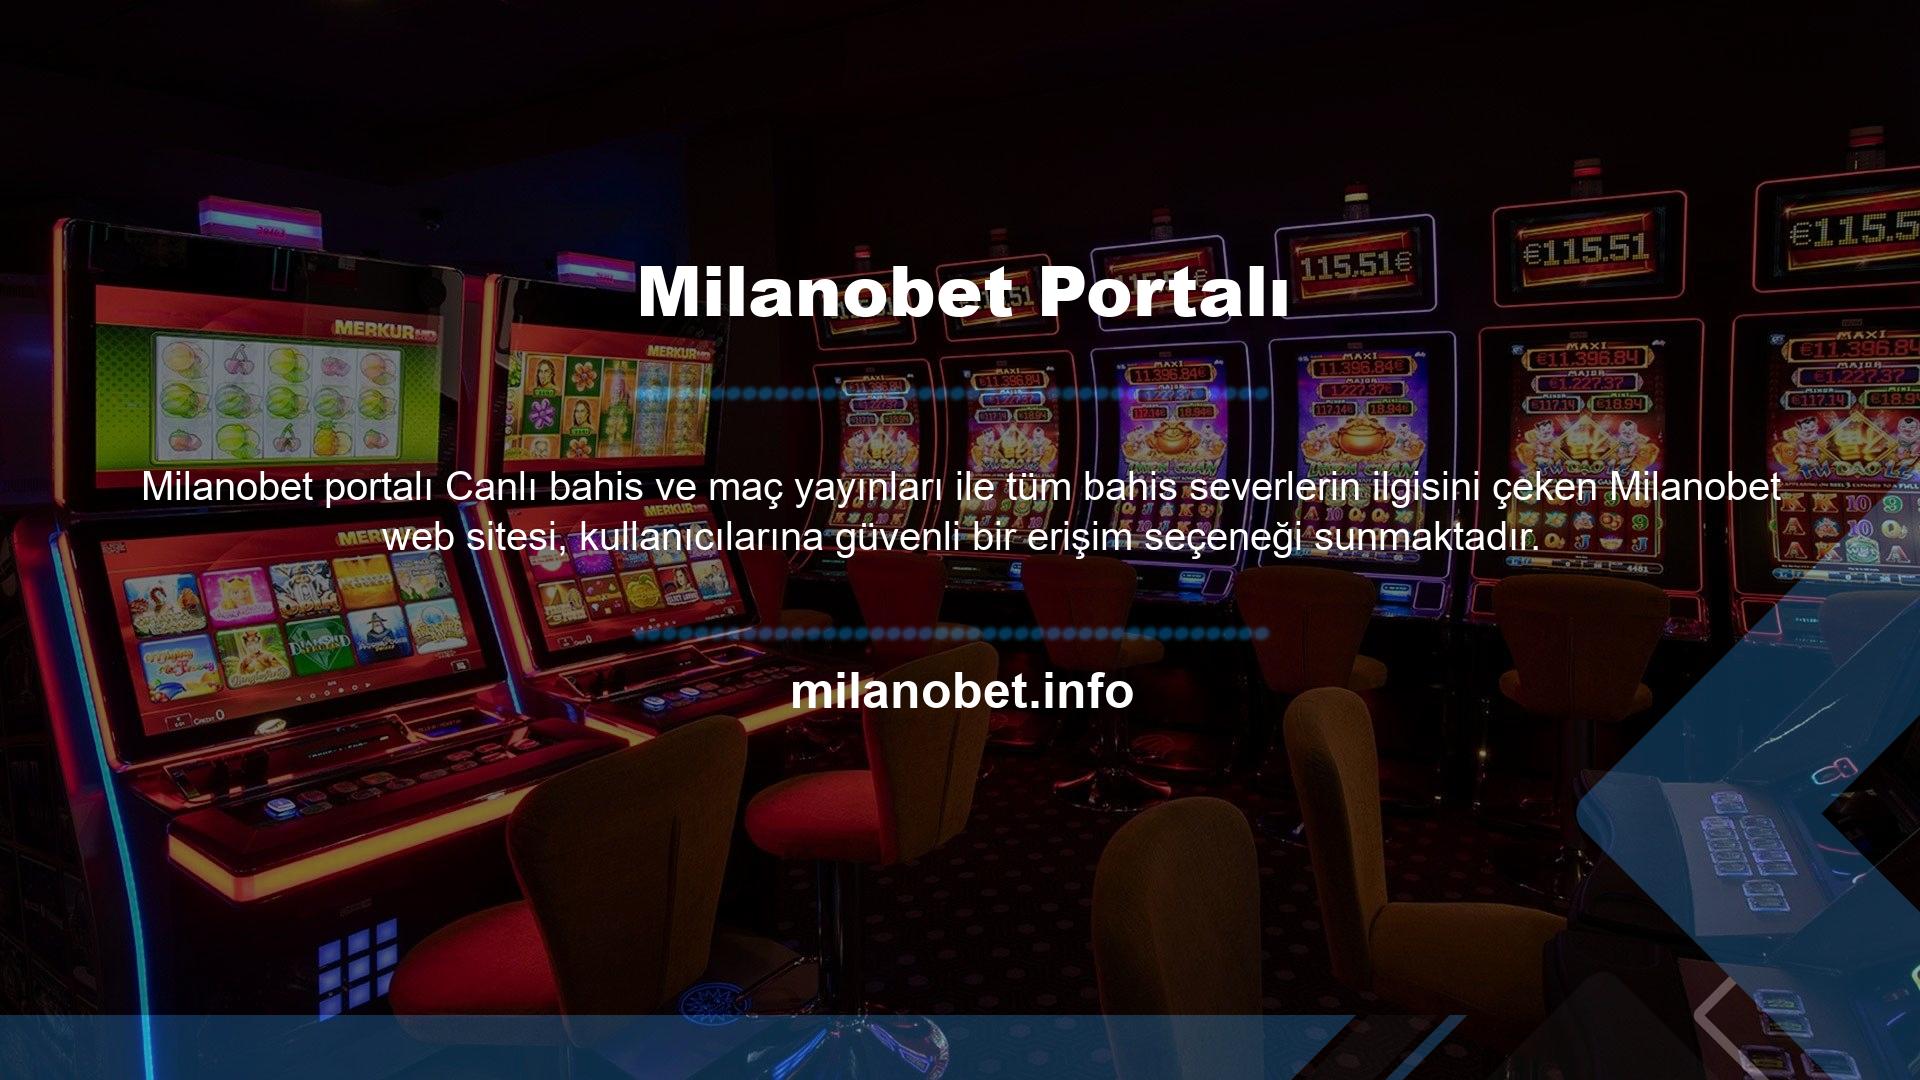 Milanobet hizmetlerine güncel bir adres ile erişilmesi, kullanıcıların oyunlarına her zaman erişebilmelerini ve oynayabilmelerini sağlar